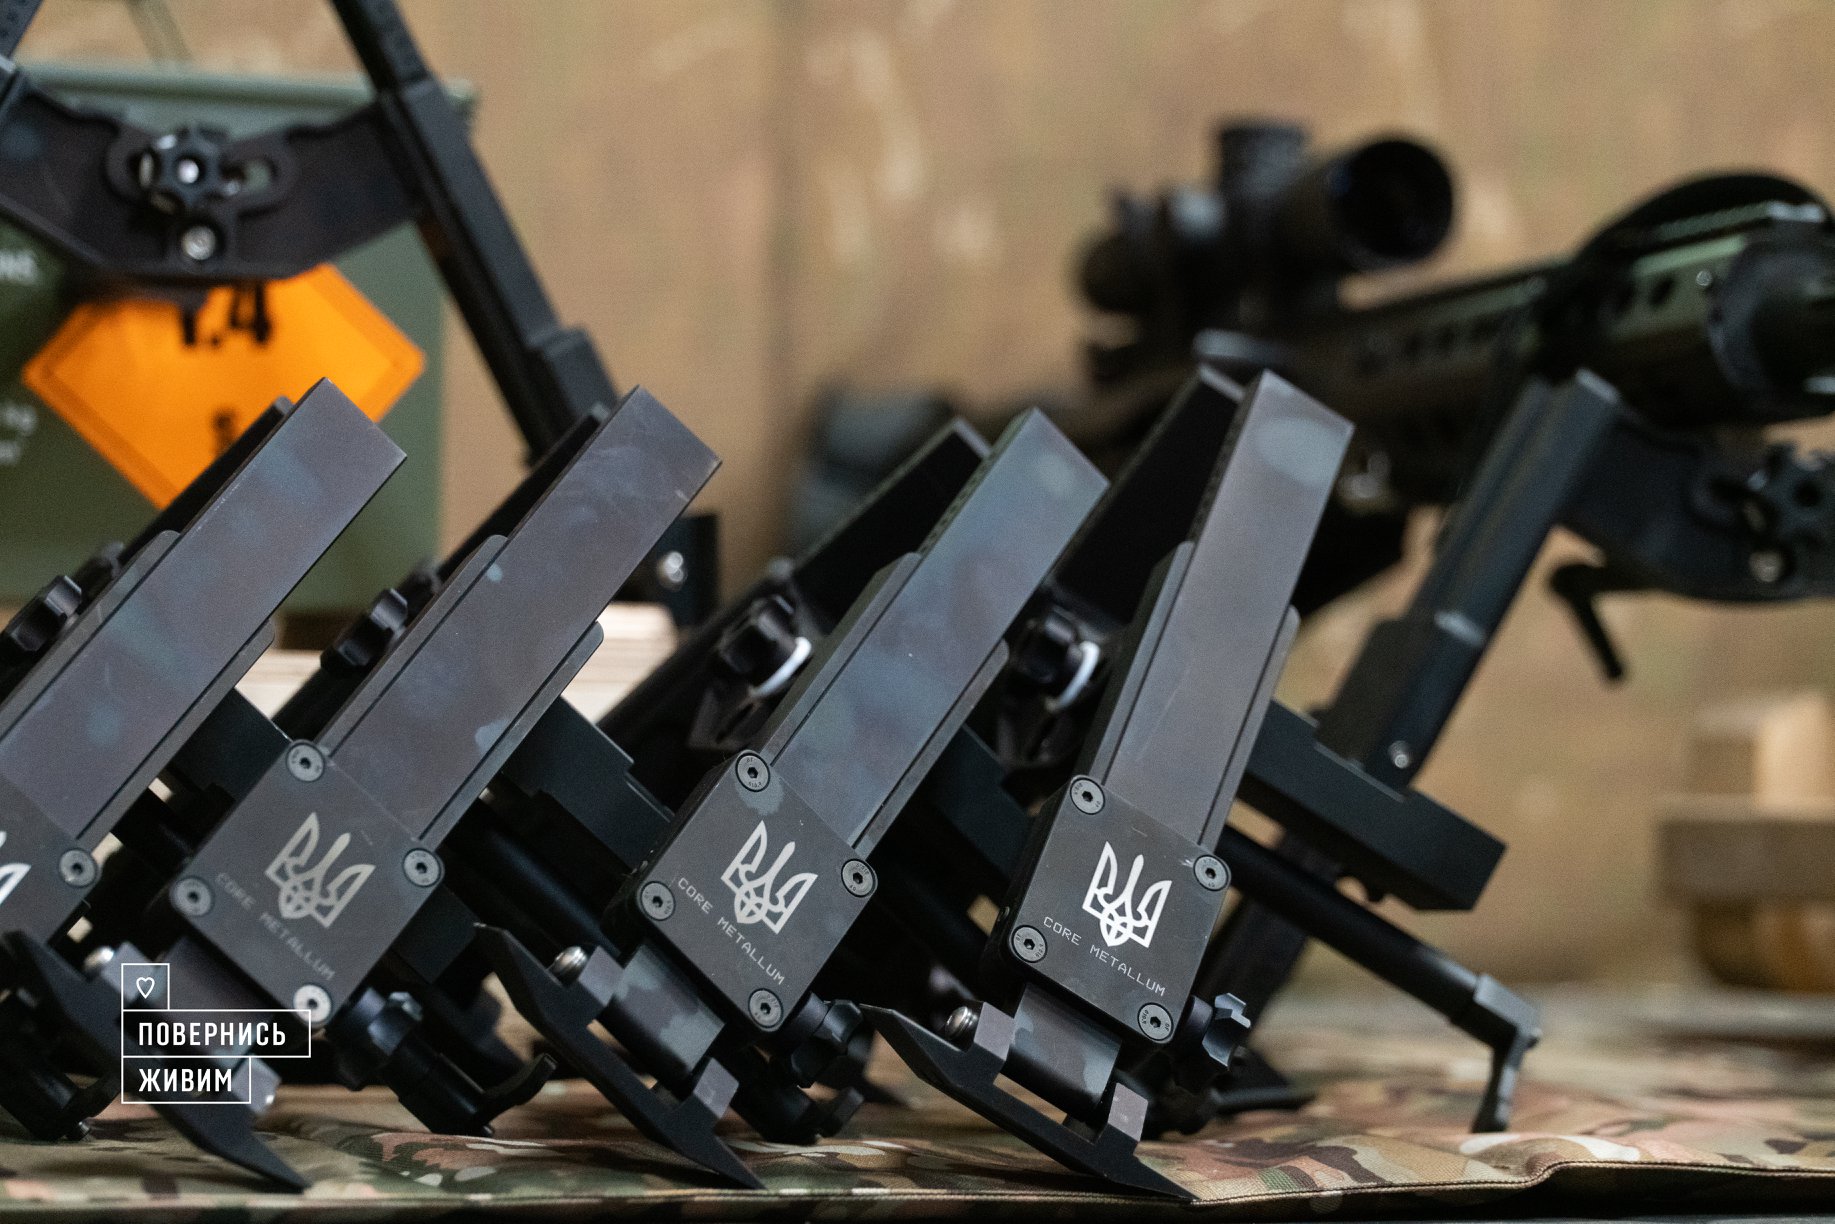 Гвинтівка Barrett військових України та нові сошки. Травень 2022. Фото: Фонд "Повернись живим"